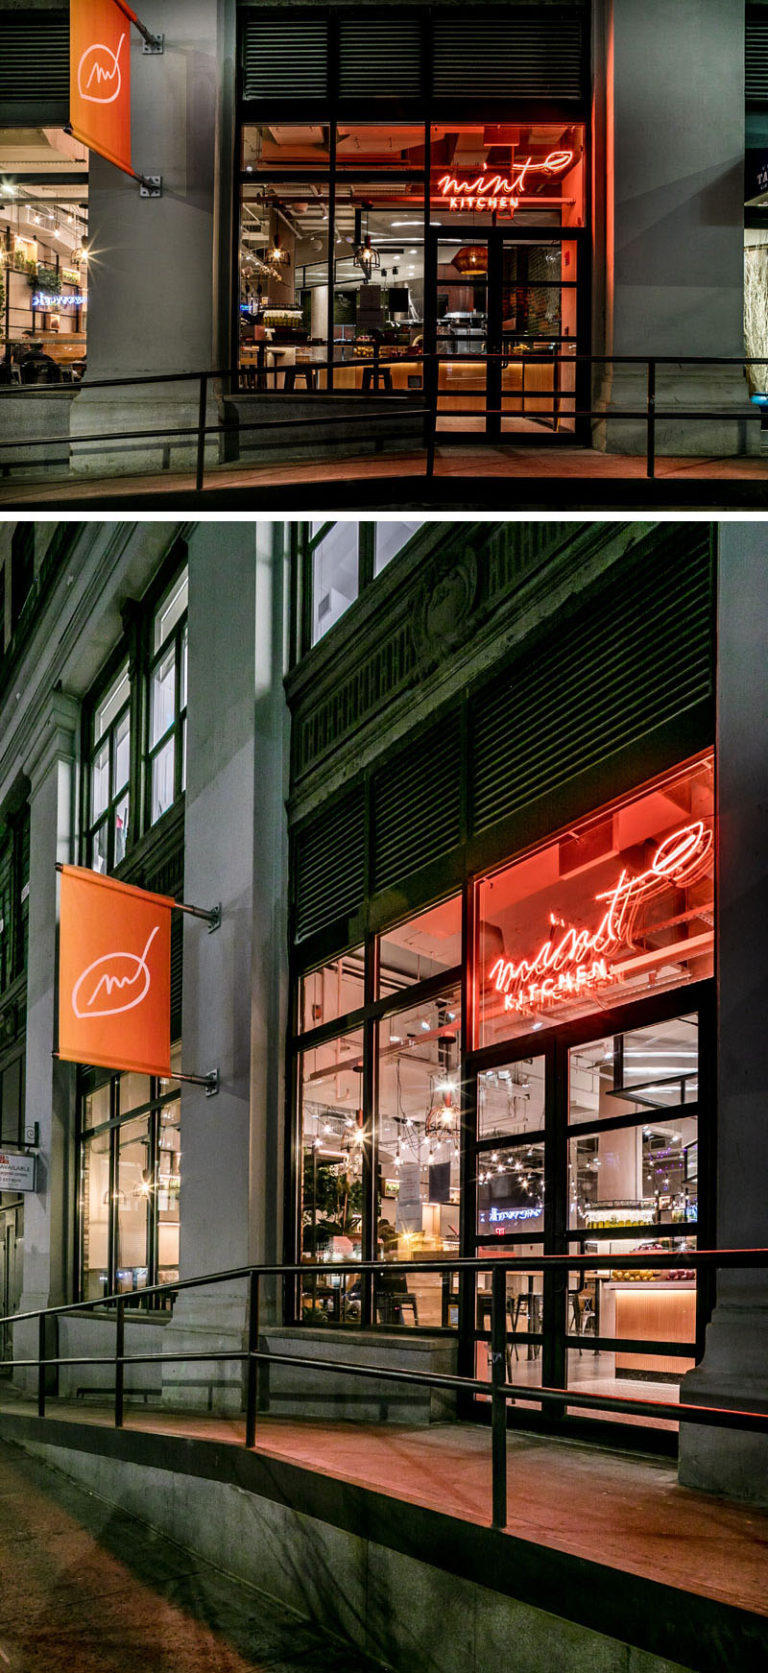 A New Fast Casual Restaurant by CRÈME / Jun Aizaki Architecture & Design in New York